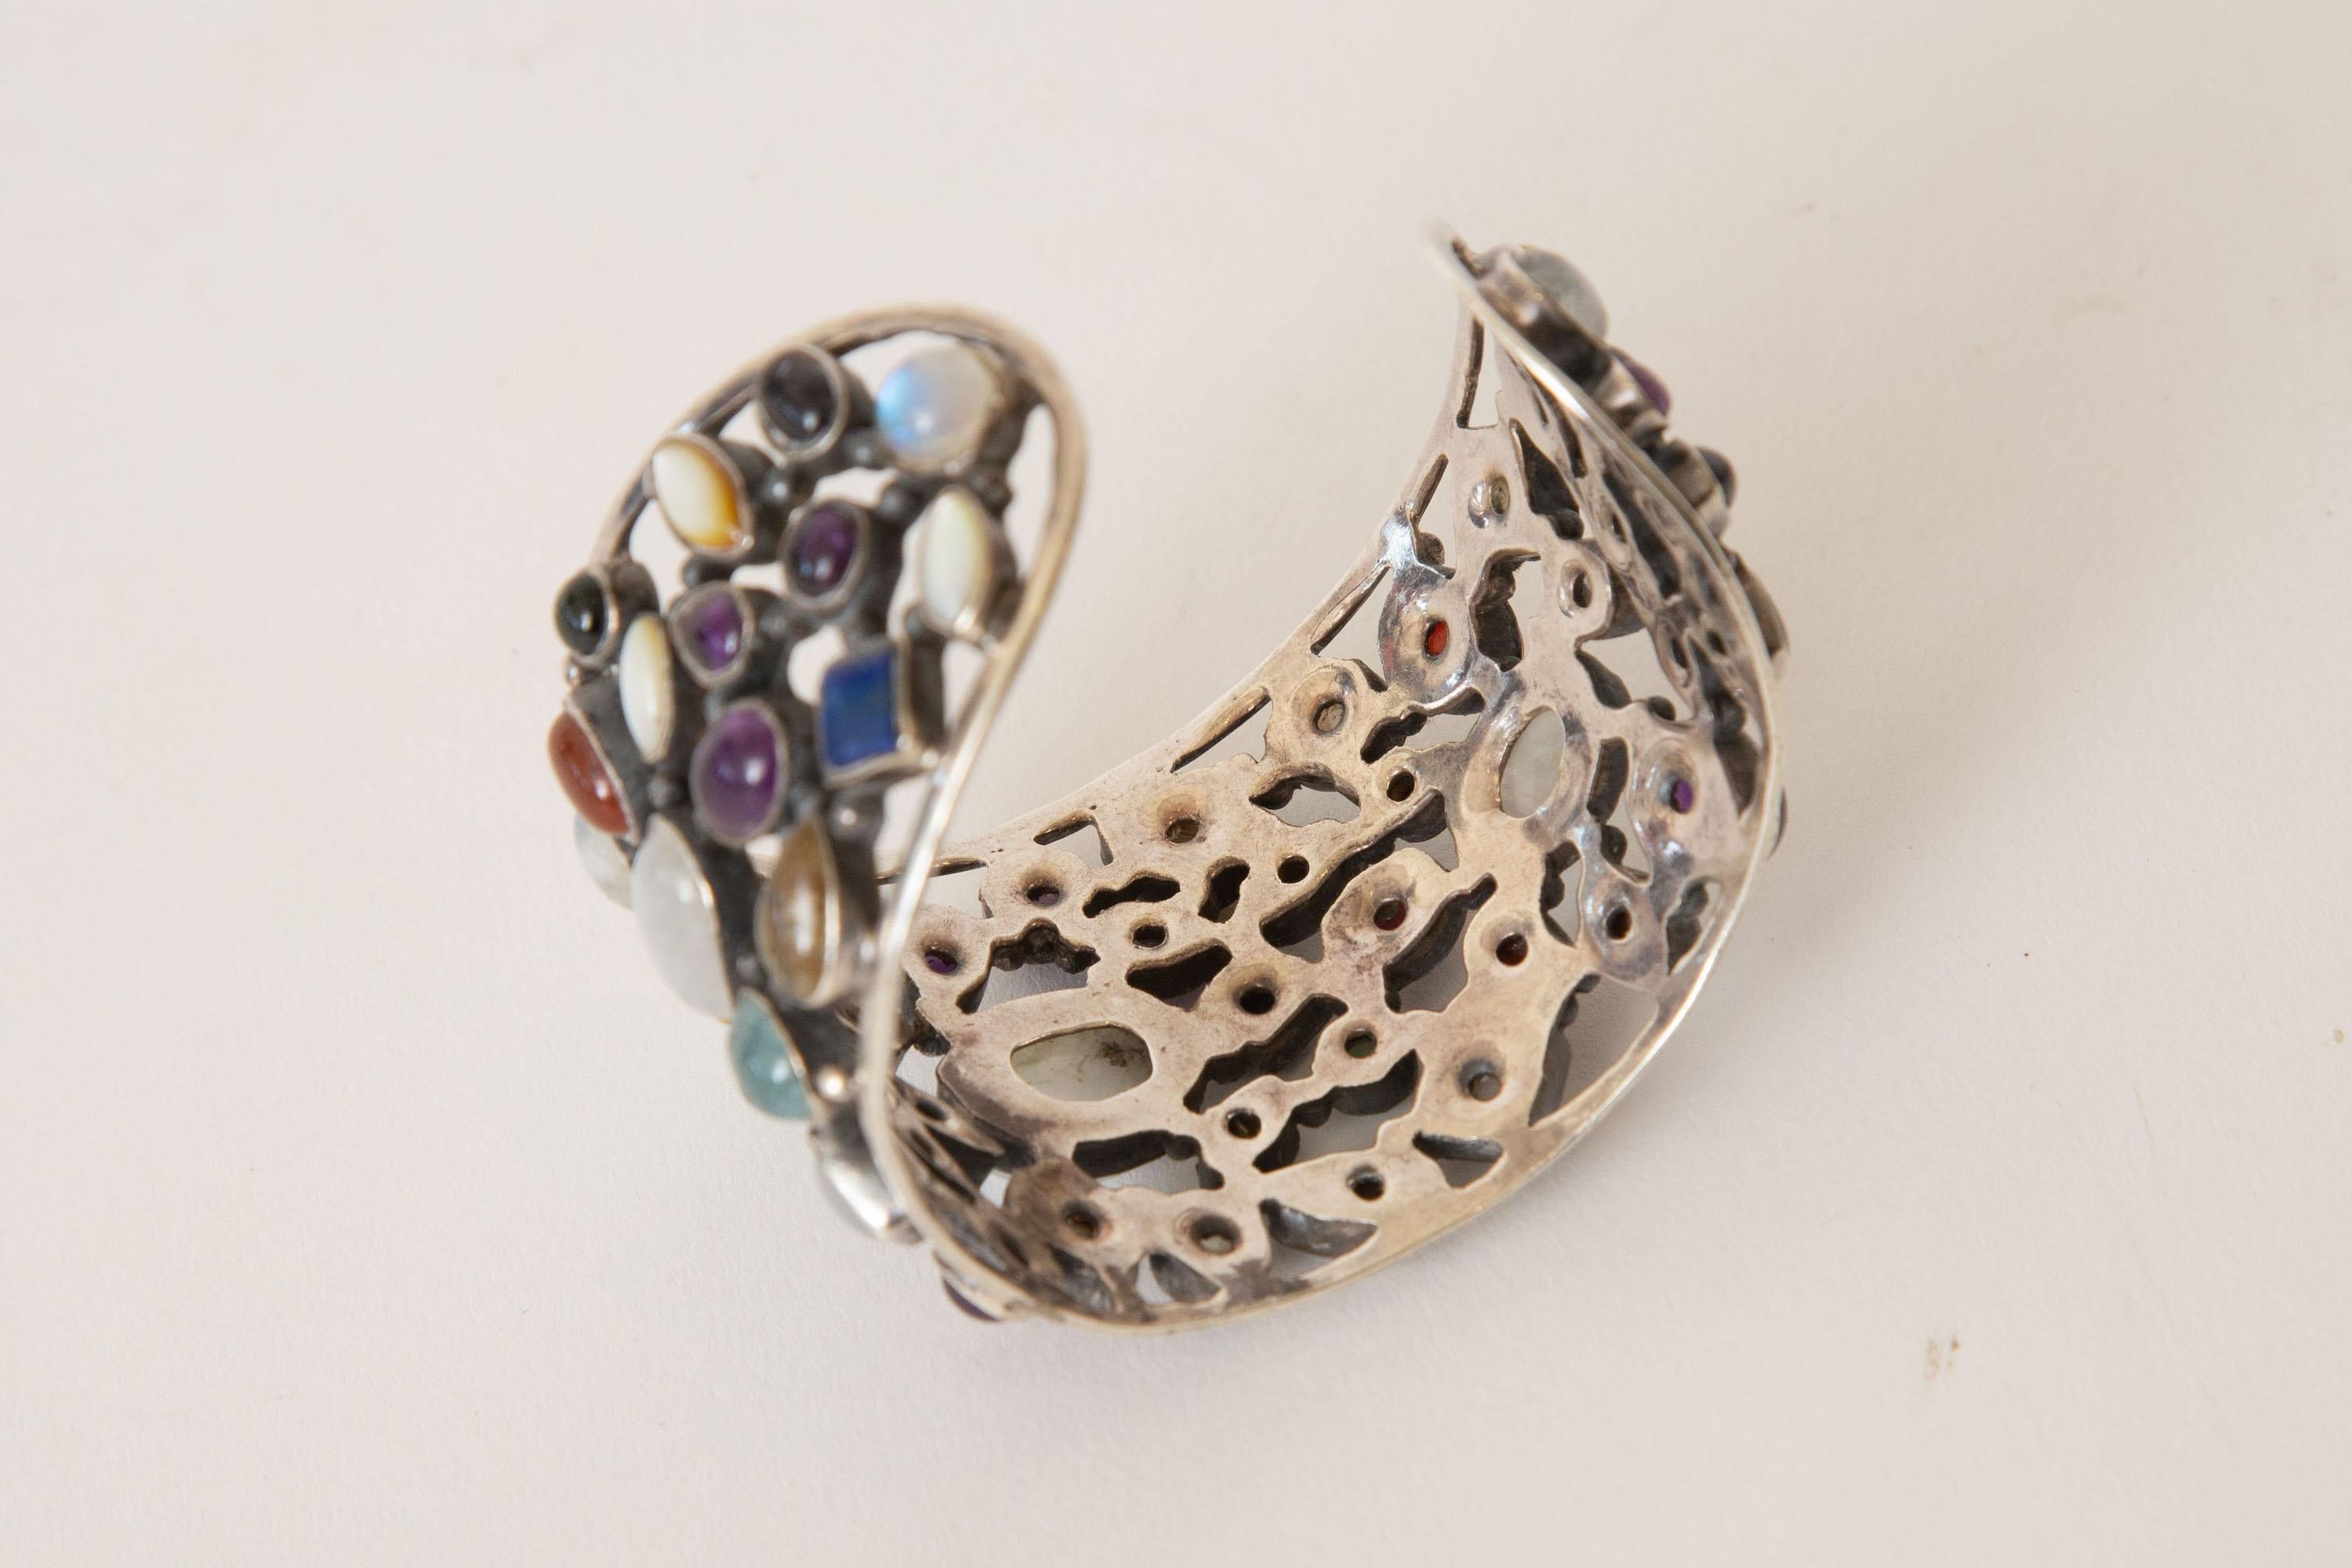  Sterling Silver and Semi Precious Stones Cuff Bracelet In Good Condition For Sale In North Miami, FL